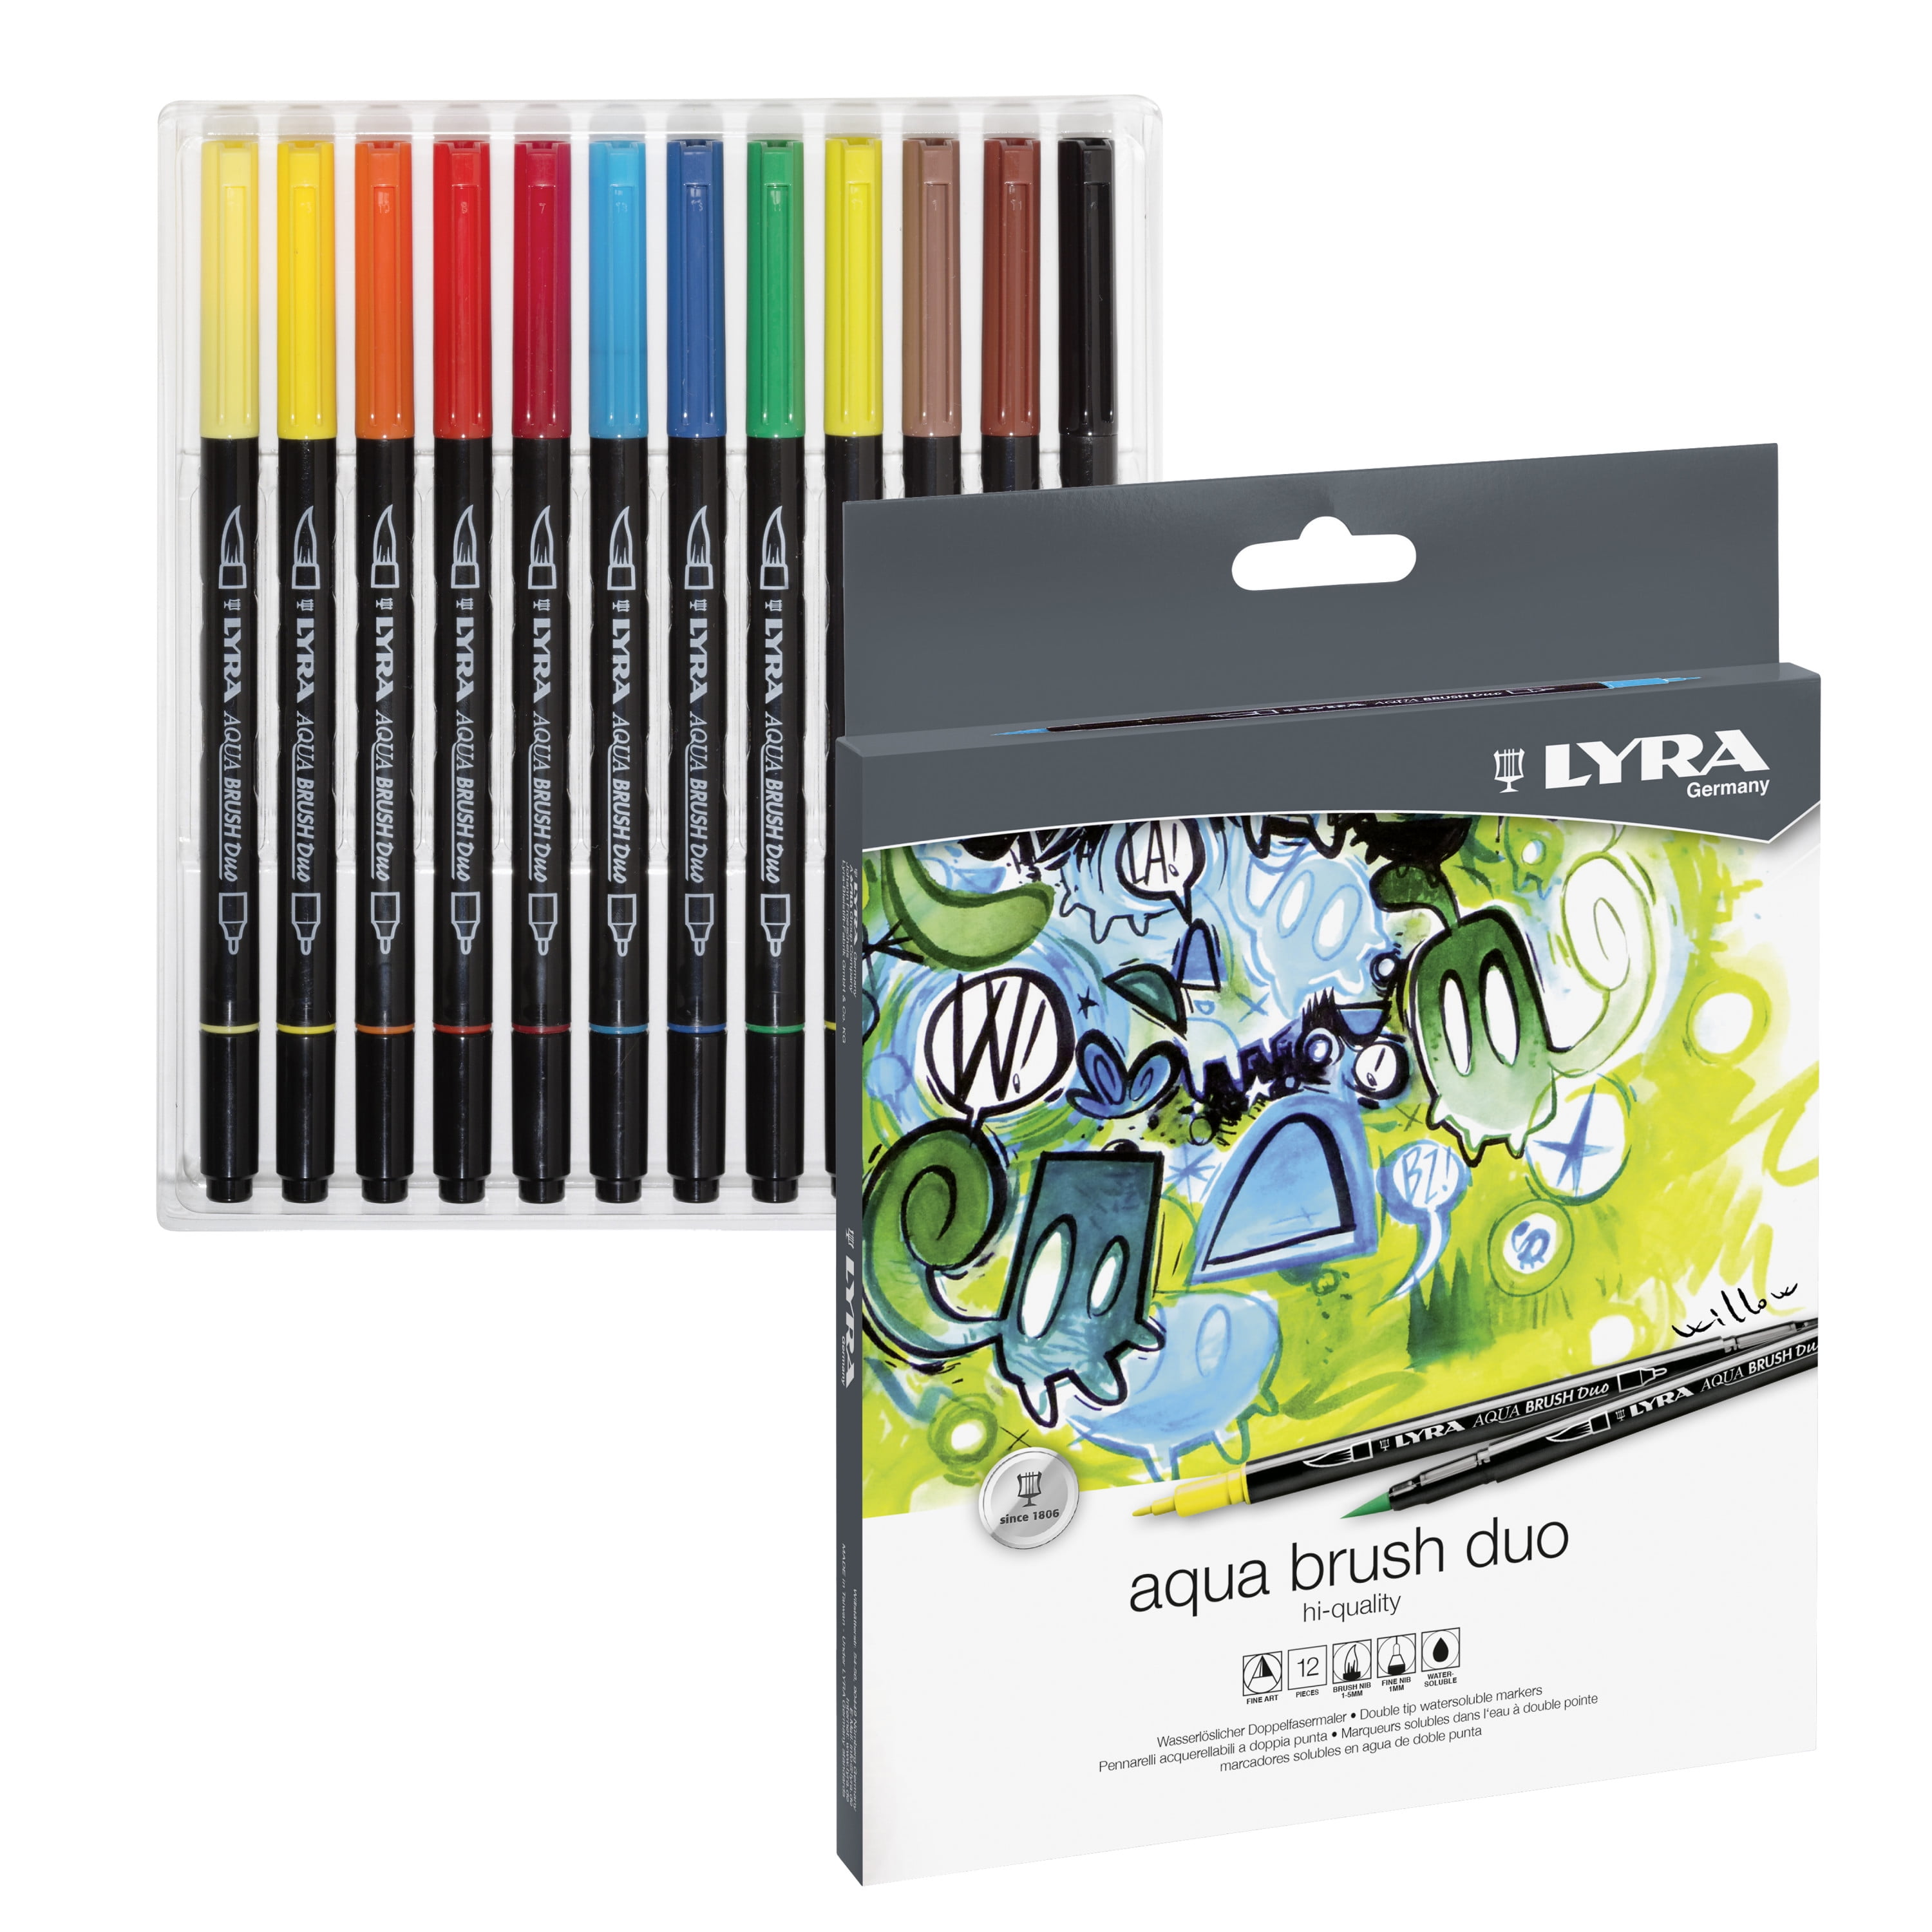 LYRA Aqua Brush Duo - Blister 6 feutres double pointe couleurs pastels